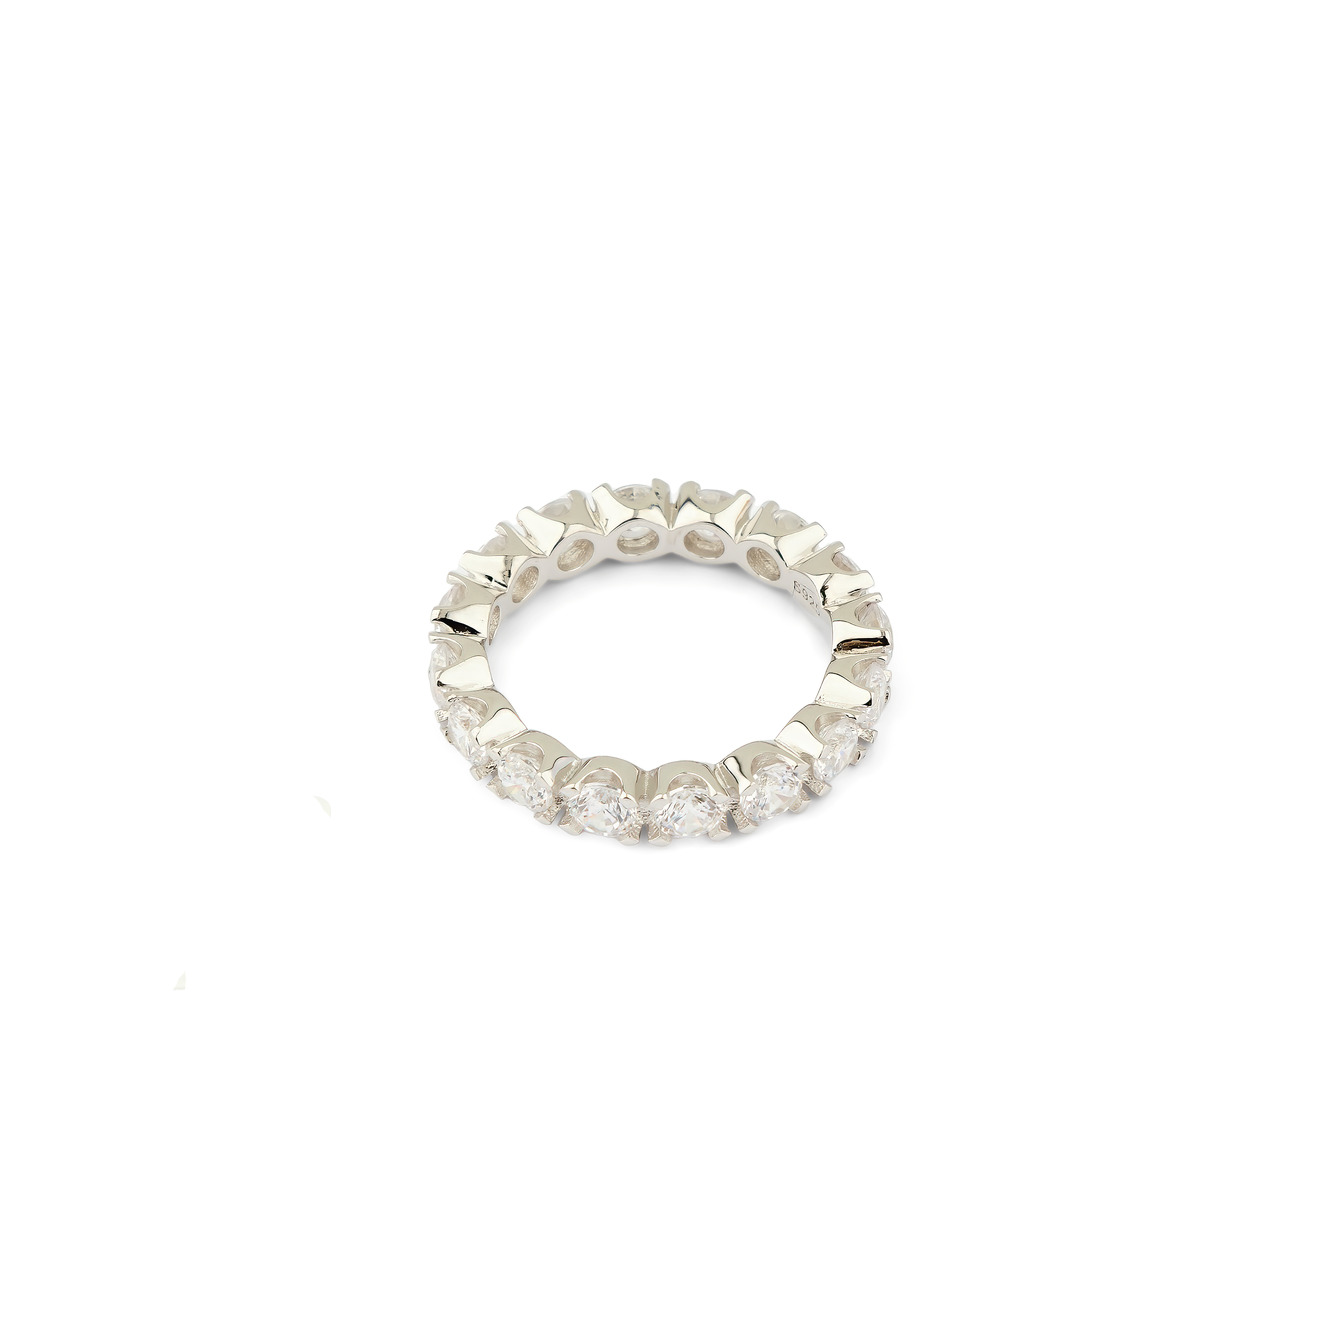 Holy Silver Тонкое кольцо из серебра с дорожкой из белых кристаллов